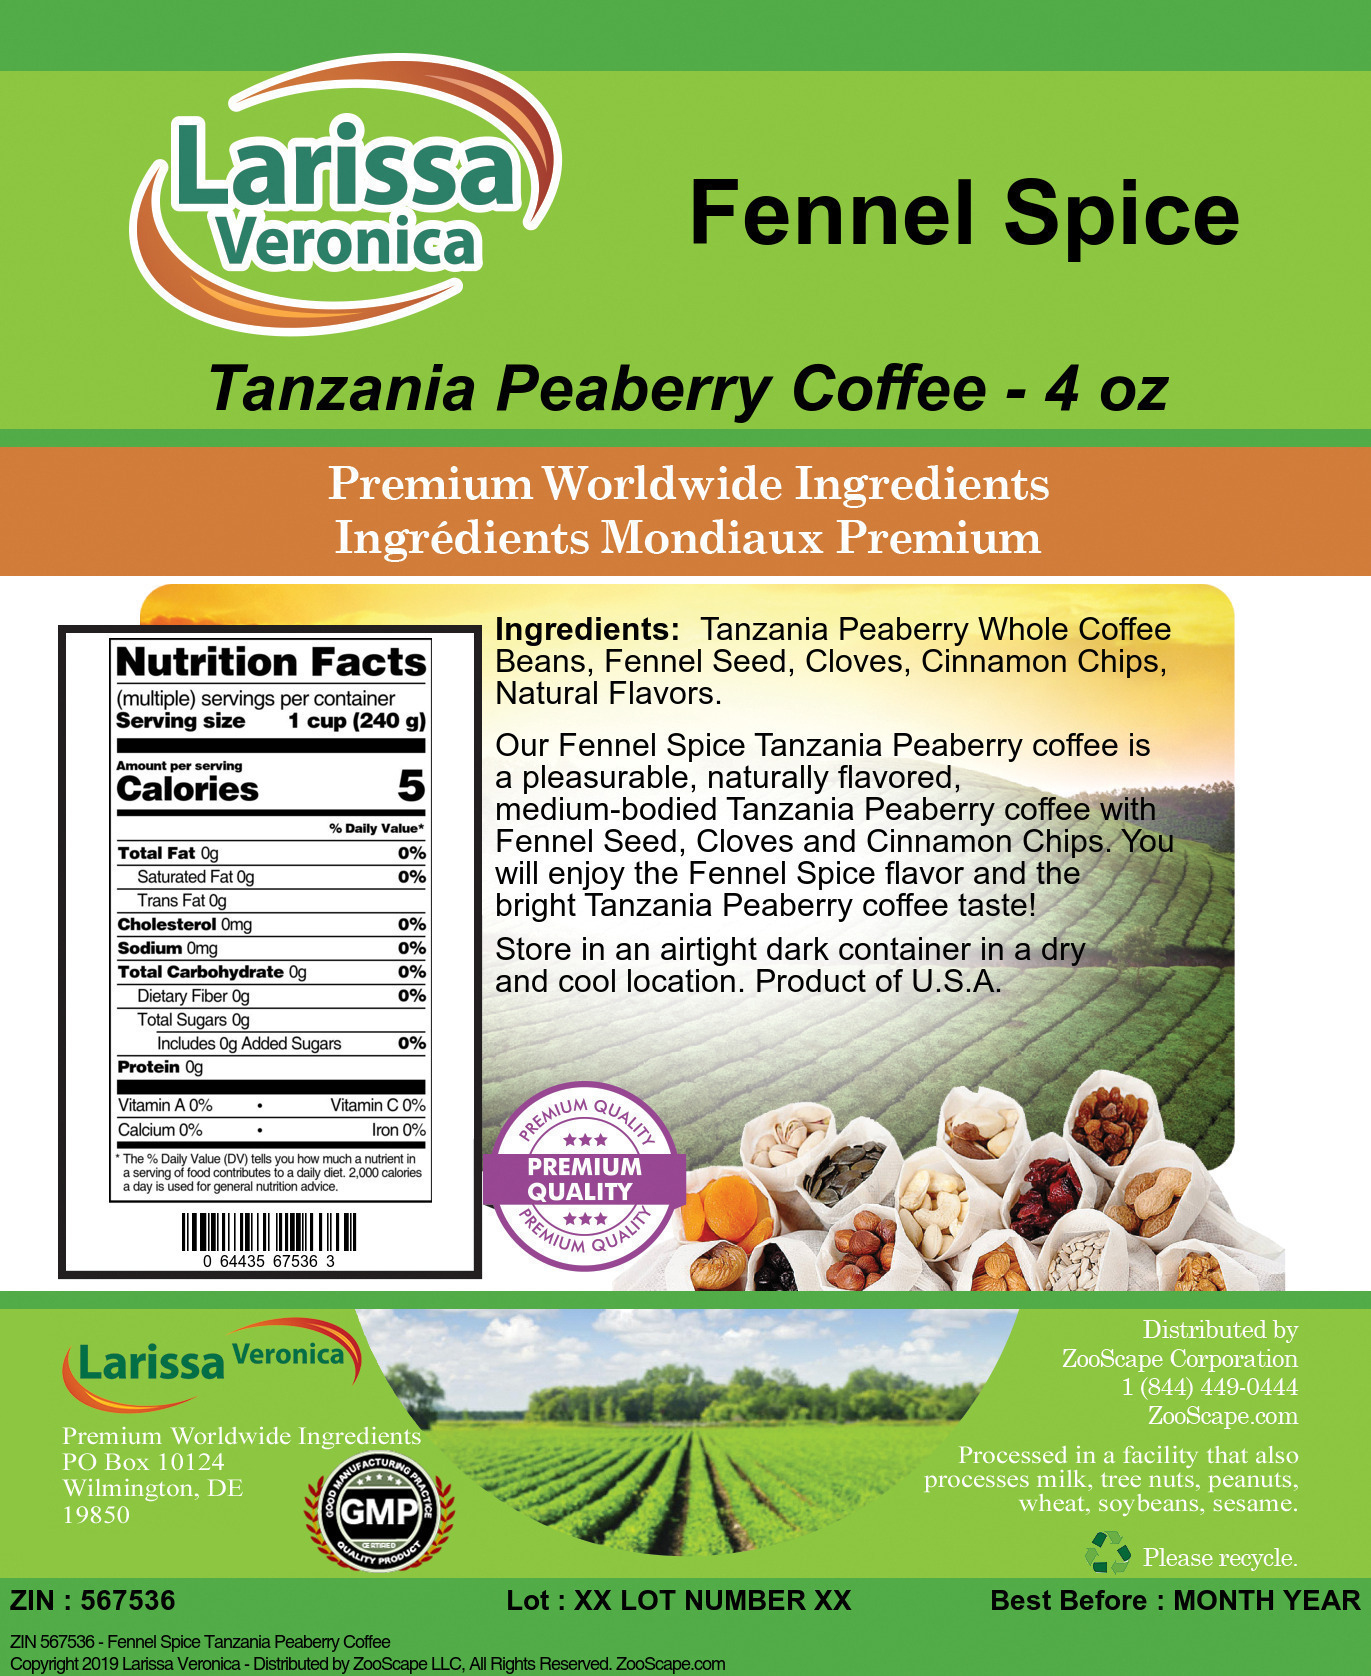 Fennel Spice Tanzania Peaberry Coffee - Label